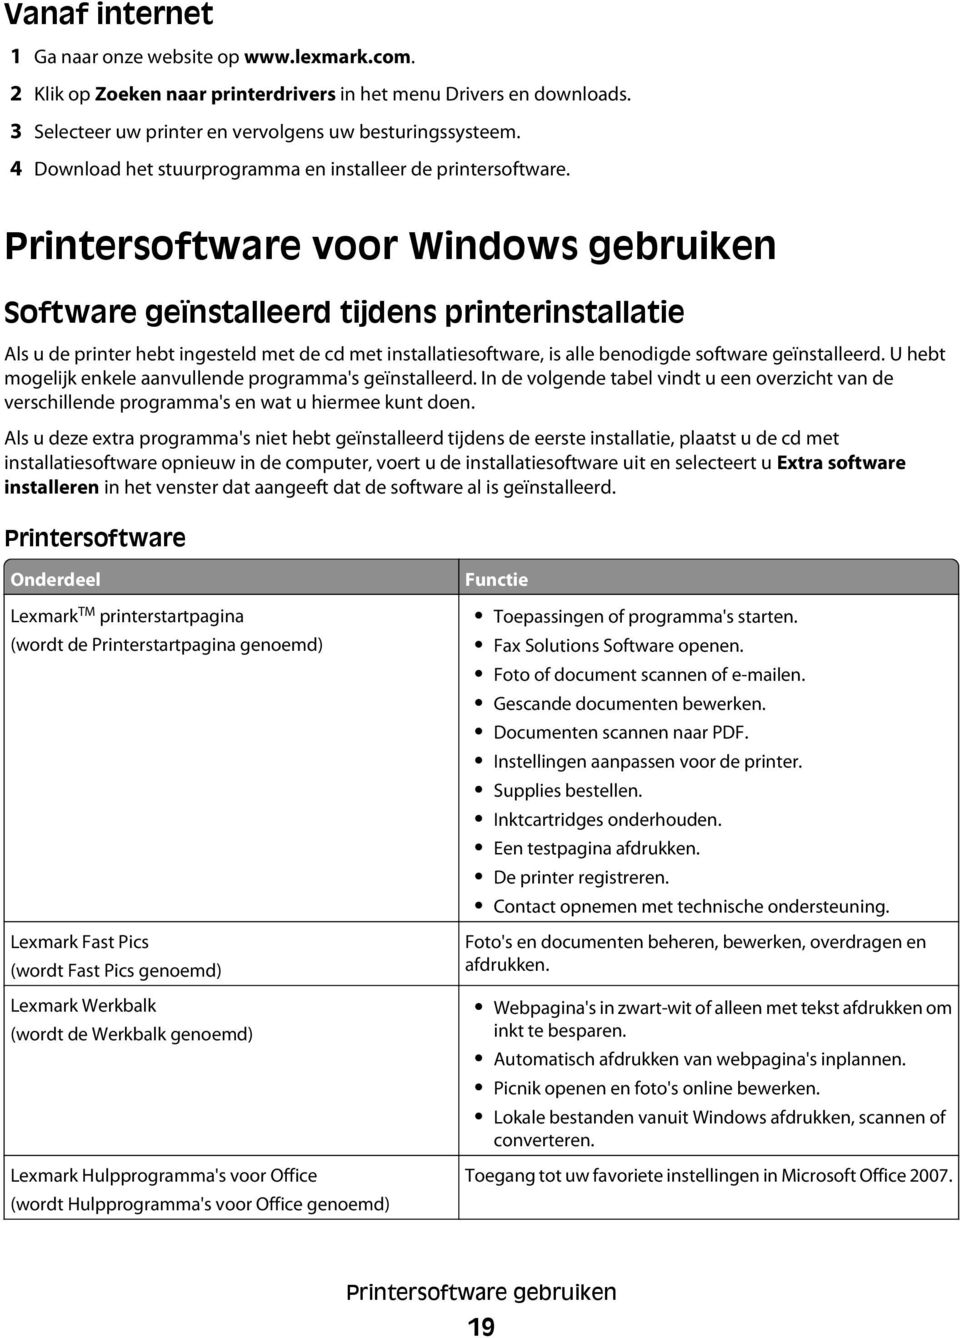 Printersoftware voor Windows gebruiken Software geïnstalleerd tijdens printerinstallatie Als u de printer hebt ingesteld met de cd met installatiesoftware, is alle benodigde software geïnstalleerd.